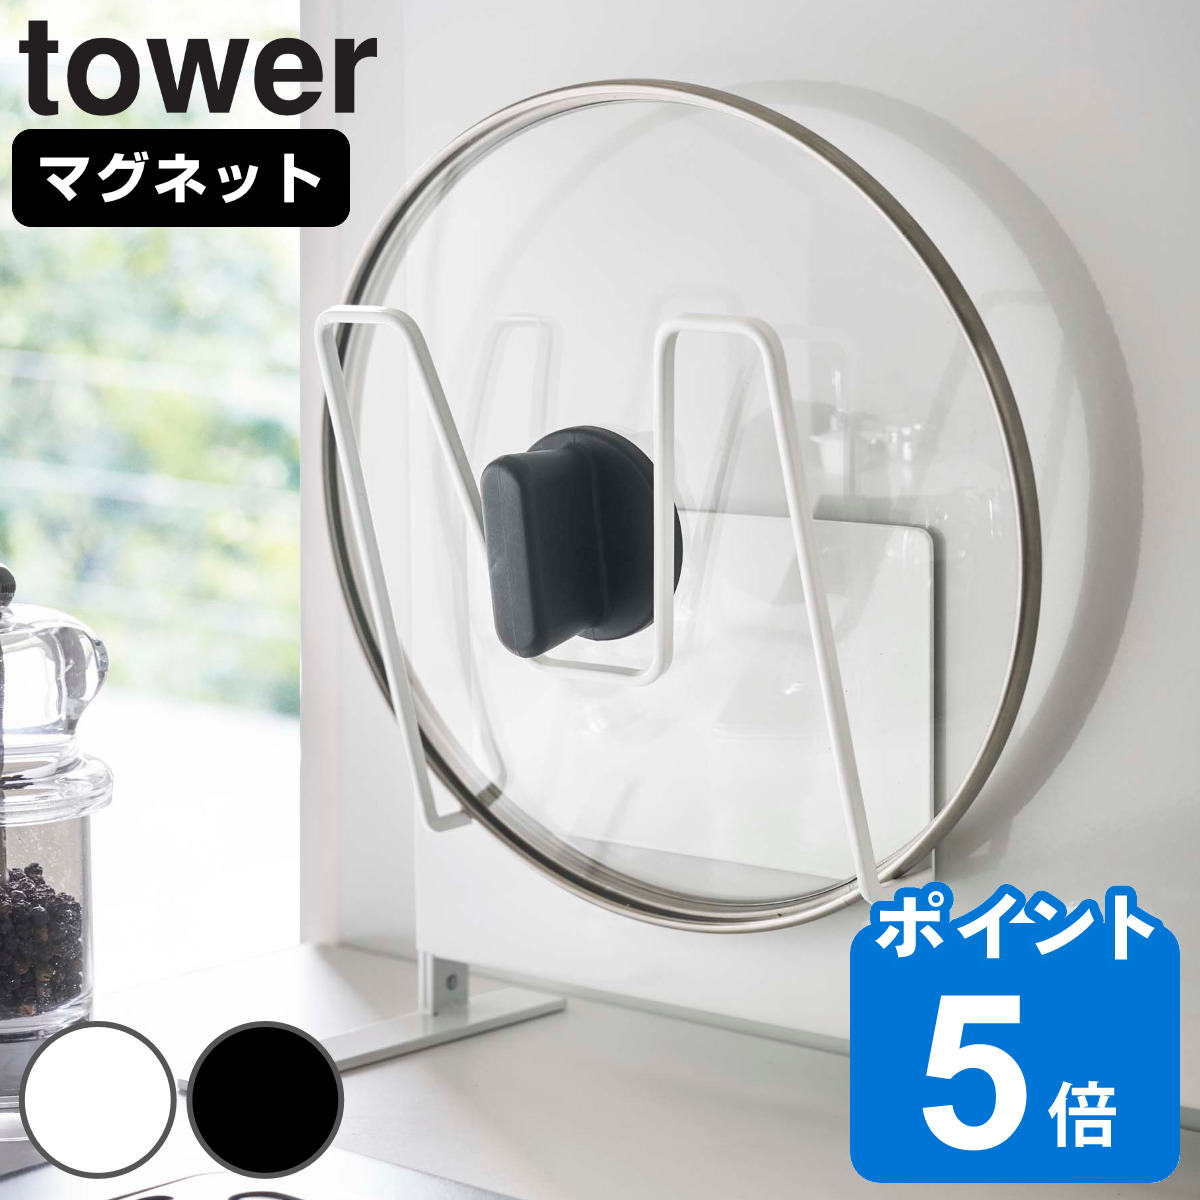 山崎実業 tower マグネット鍋蓋ホルダー タワー 対応パーツ